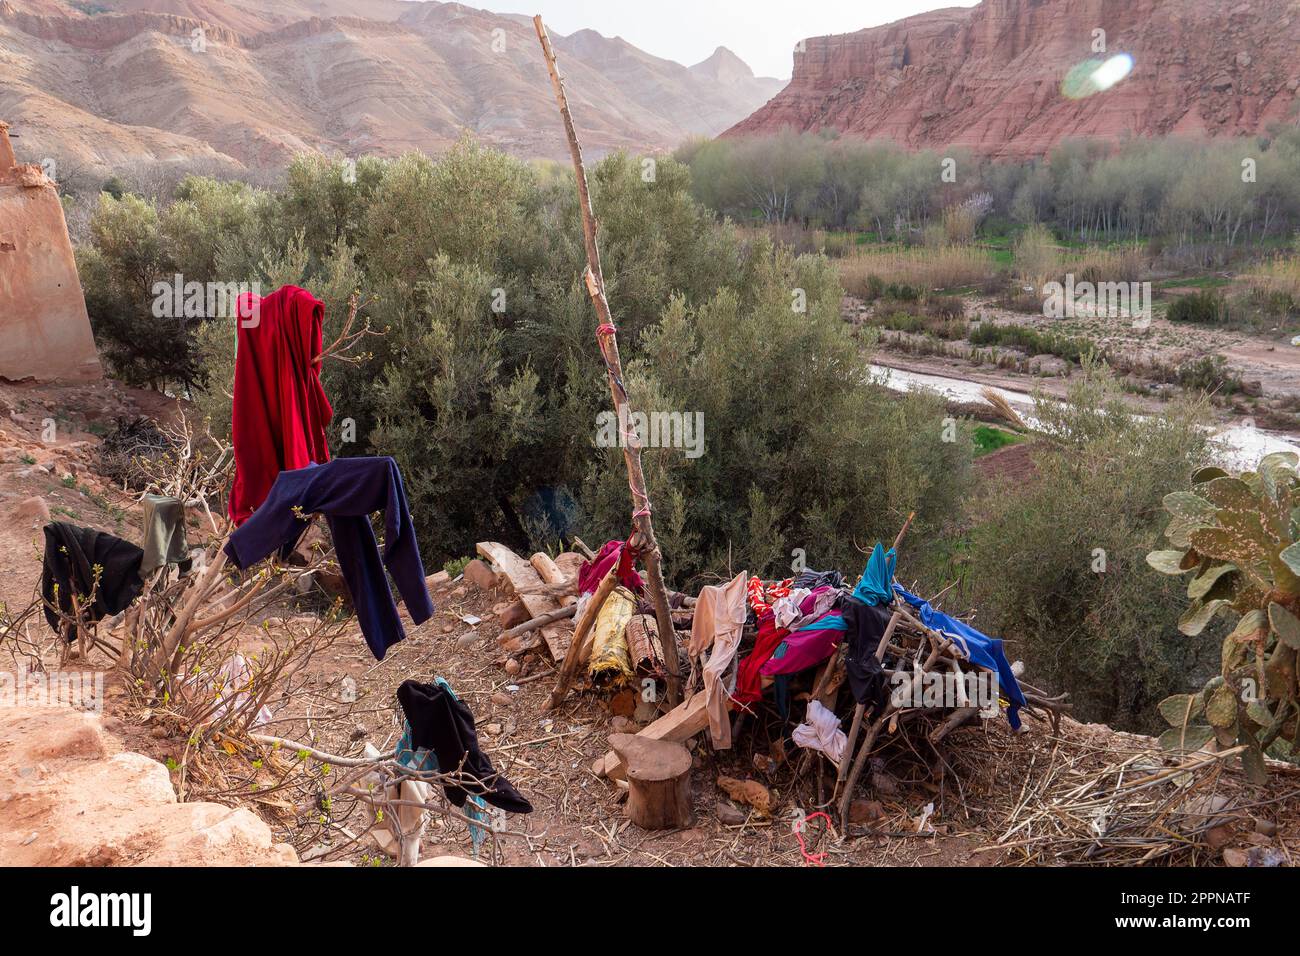 Ansicht eines traditionellen Berberdorfes im Hohen Atlas mit Wäscheplatz und Blick auf ein Flusstal Foto Stock